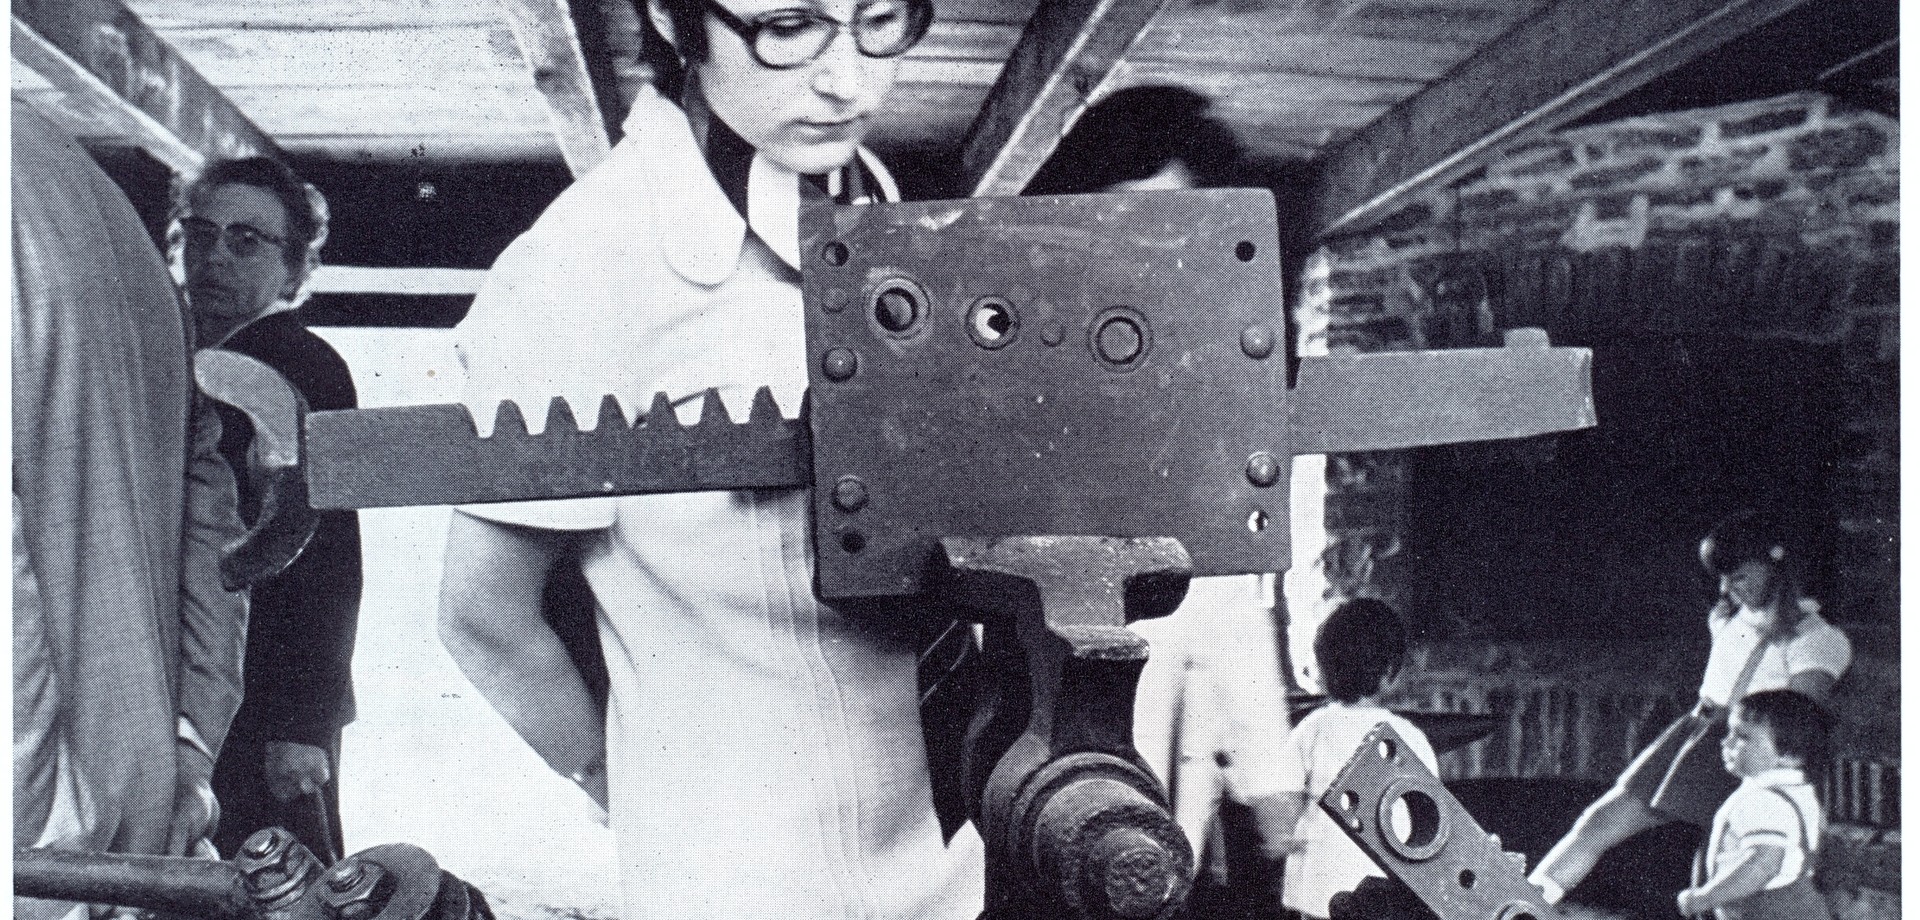 Ein Foto aus den 70er Jahre. Eine Frau betrachtet eine Maschine in einer Werkstatt.